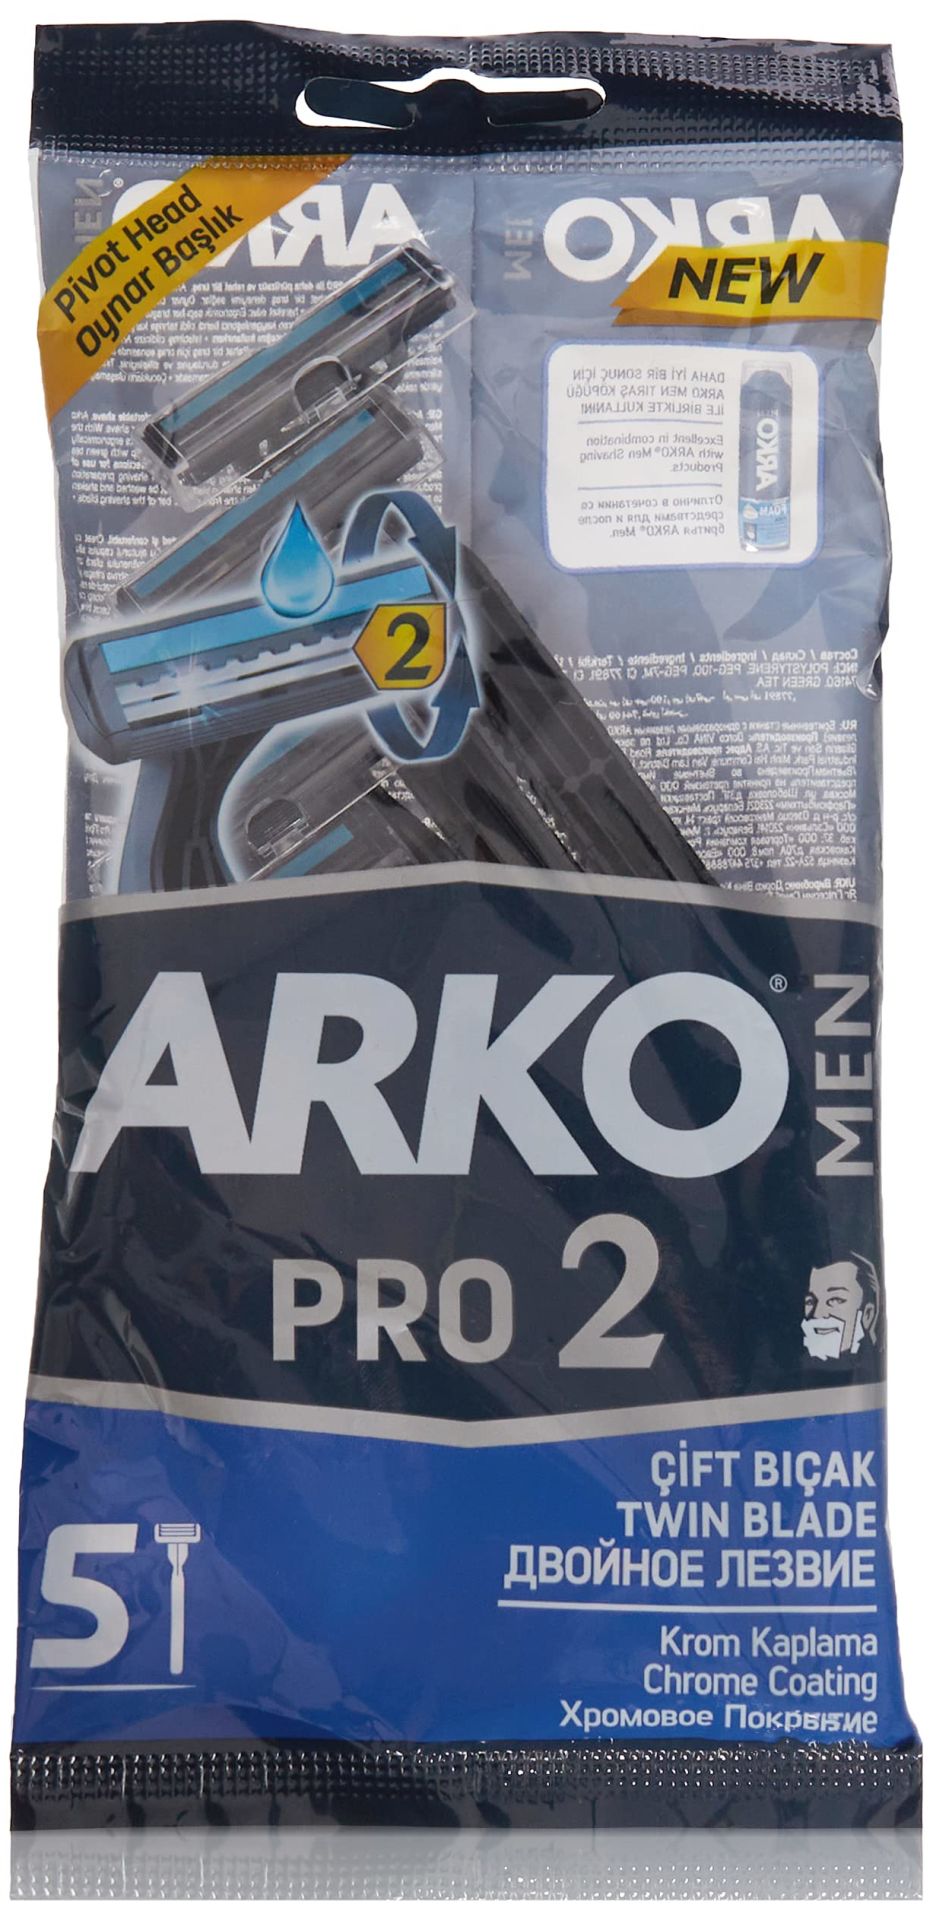 Arko Men Pro 2 Tıraş Bıçağı 5li poşet Çift Bıçak